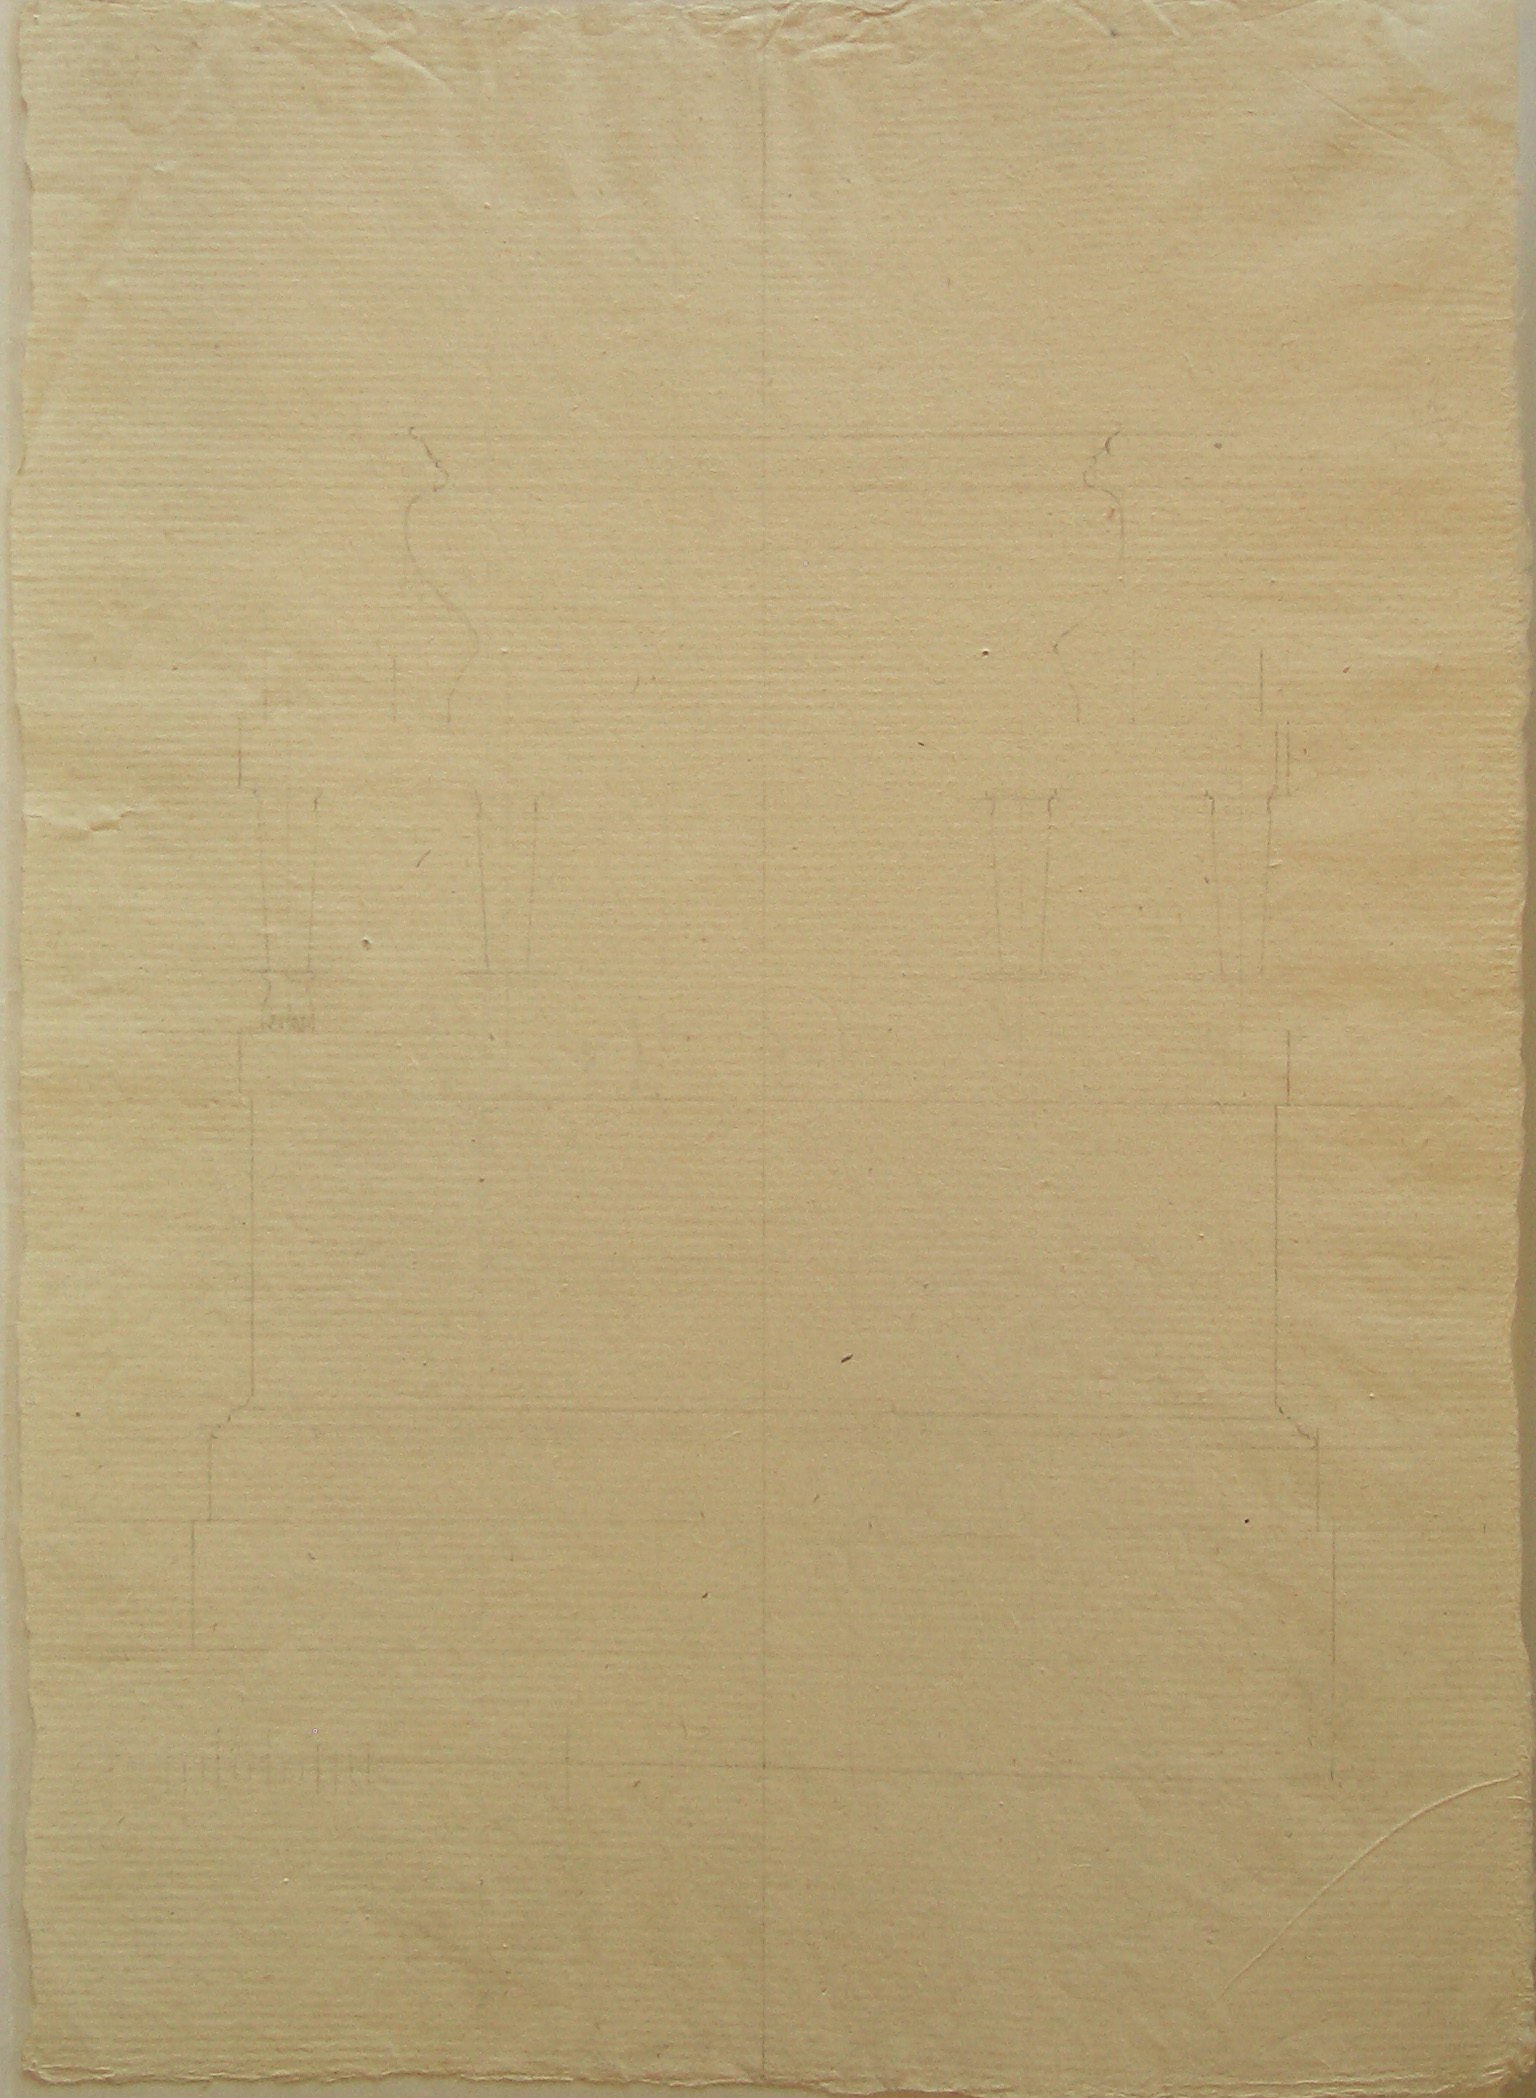 Progetto architetettonico: dttaglio di cornici (disegno architettonico, opera isolata) di Cagnola Luigi (attribuito) (sec. XIX)